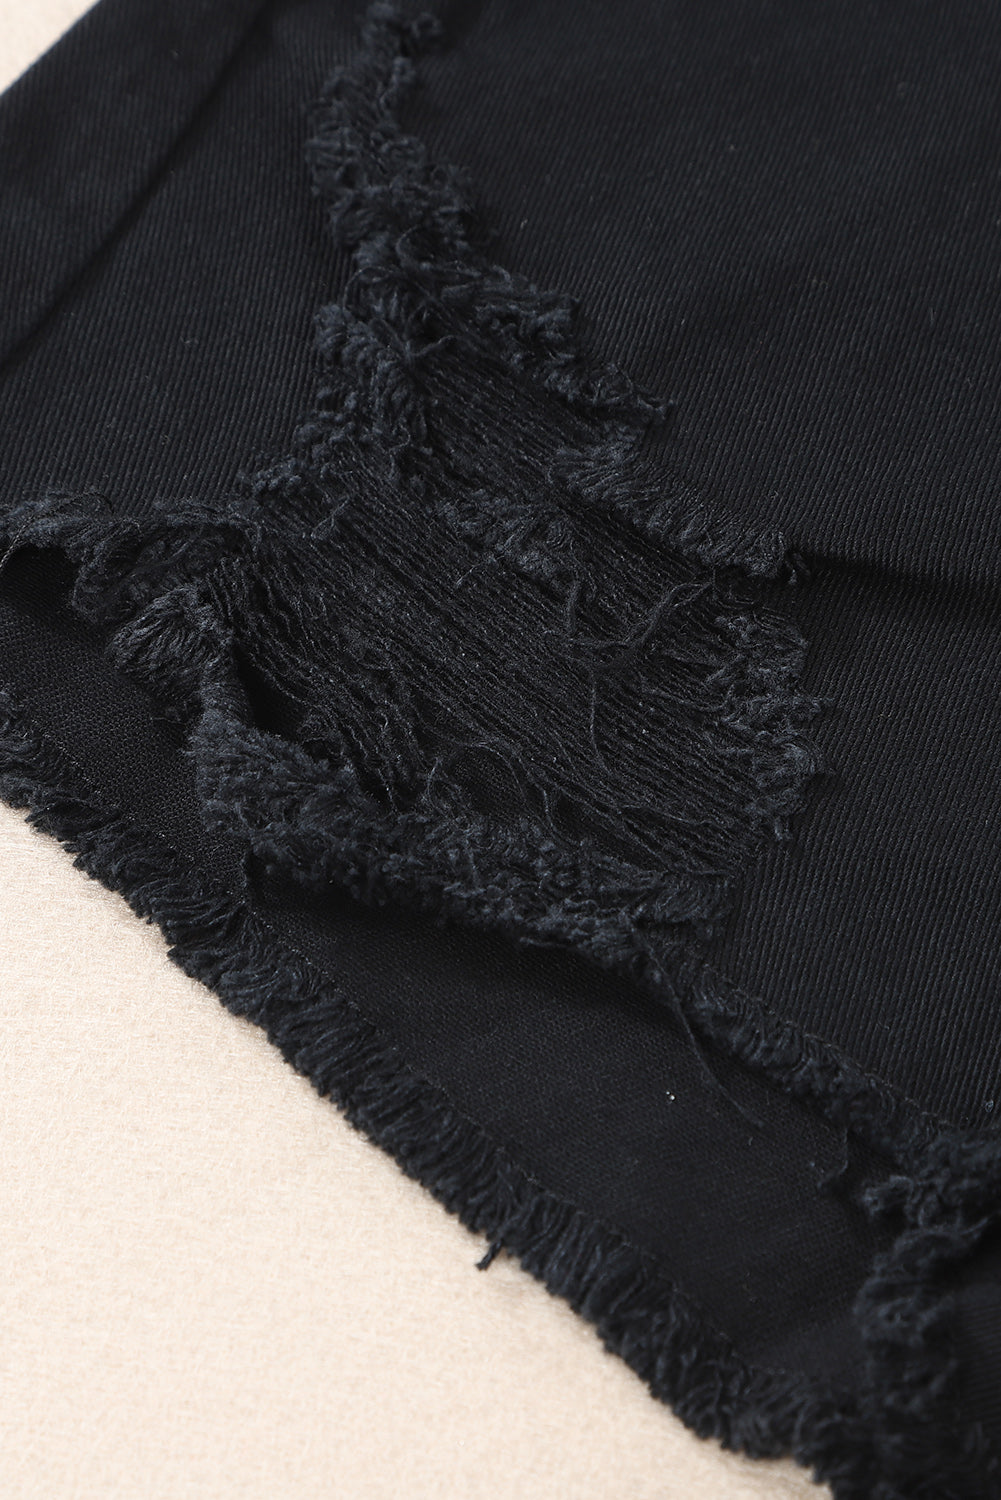 Crne asimetrične kratke hlače od poderanog trapera